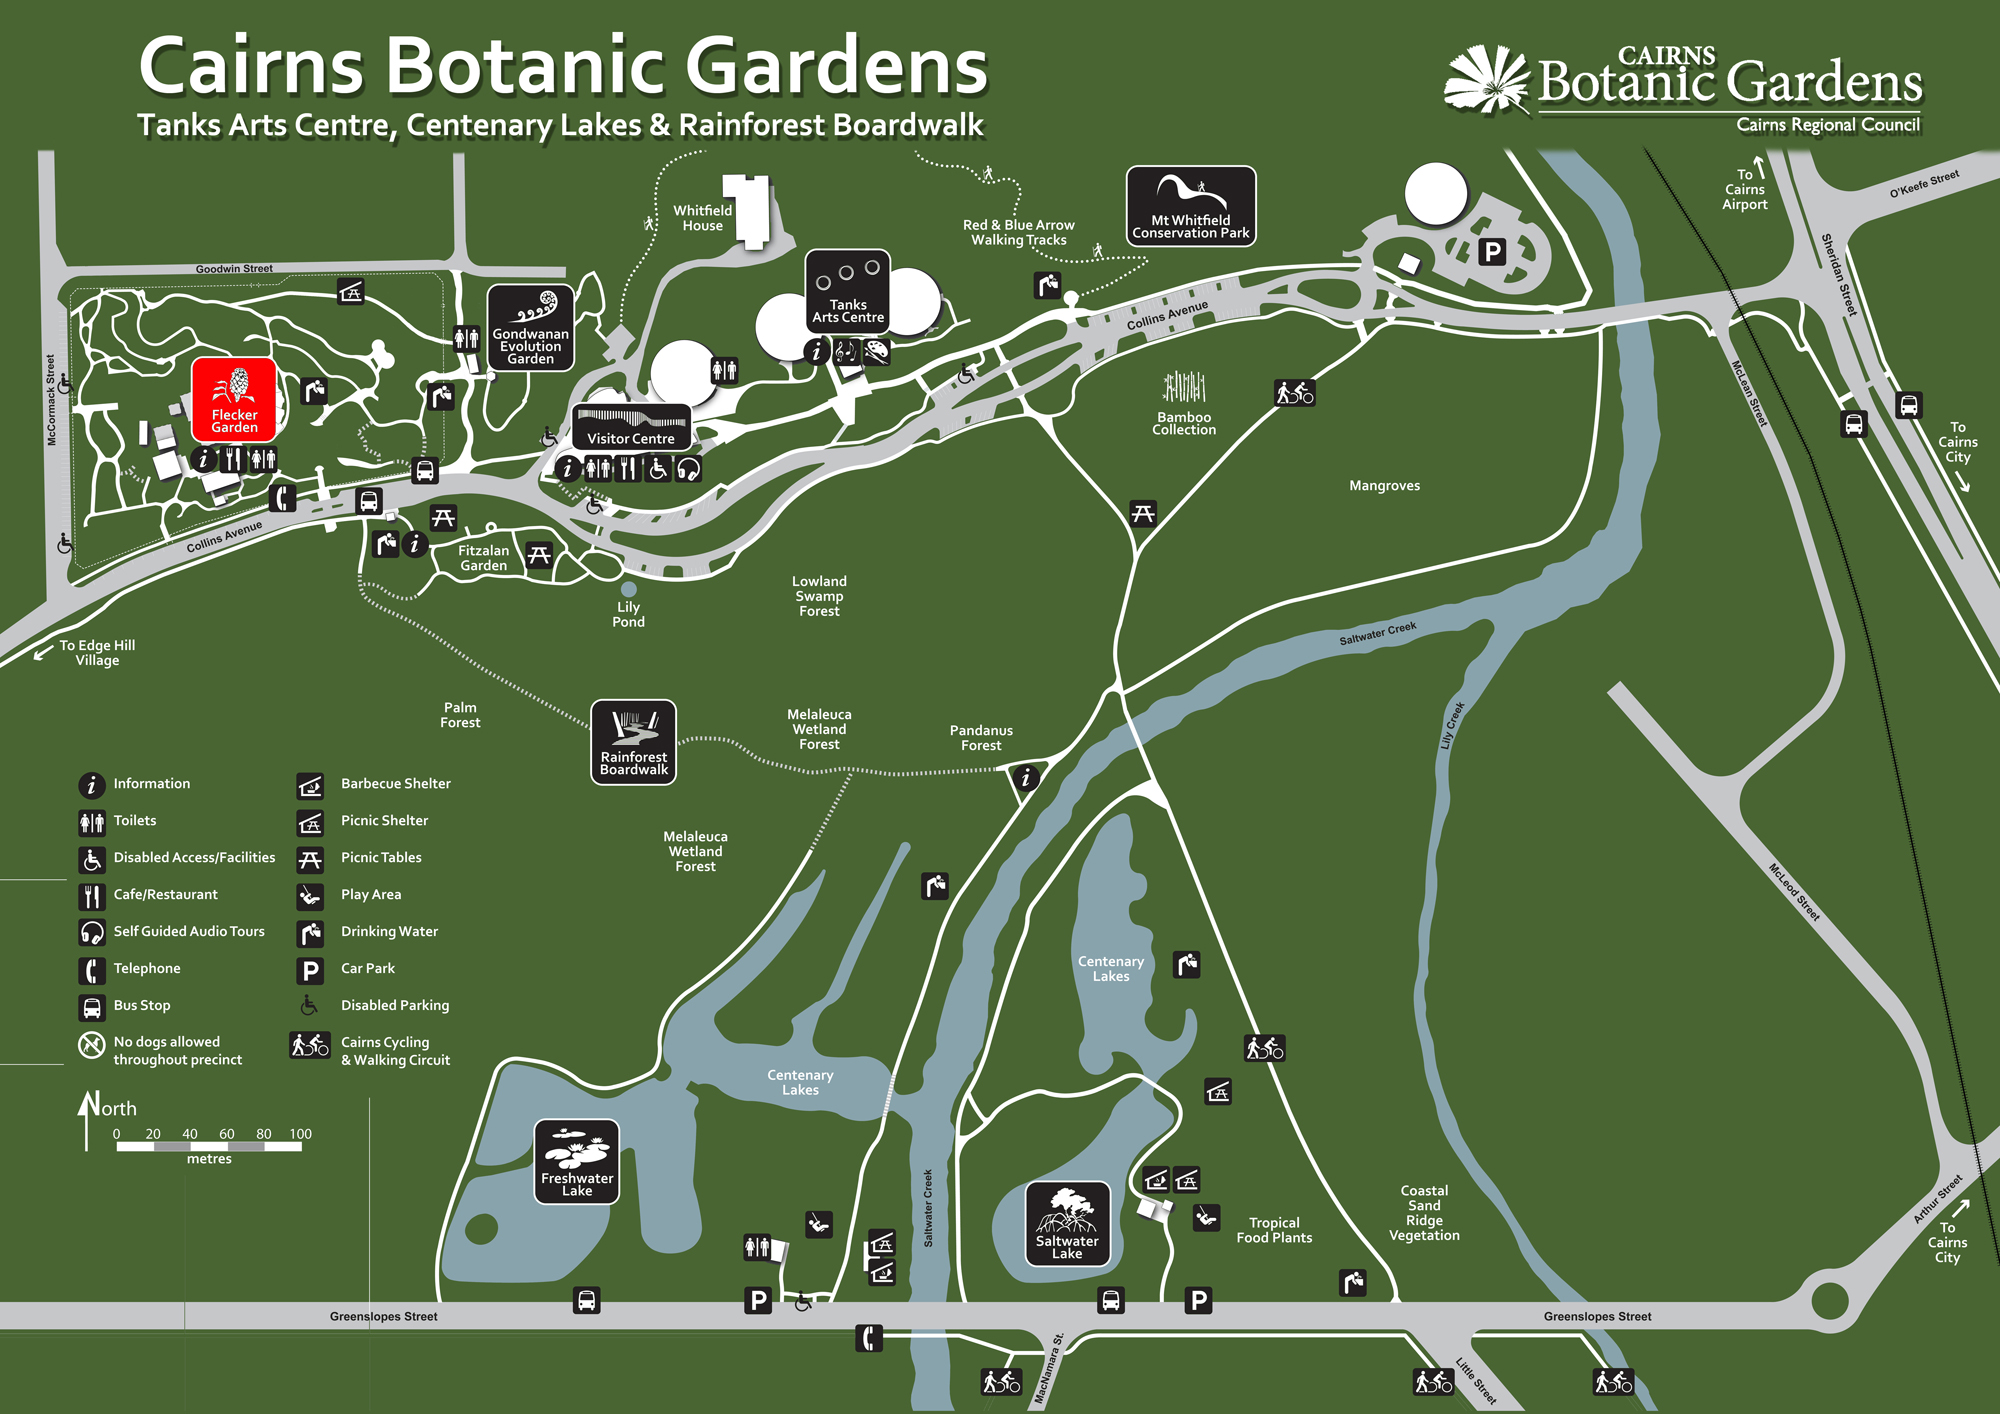 Cairns Botanic Gardens | Discover the Gardens